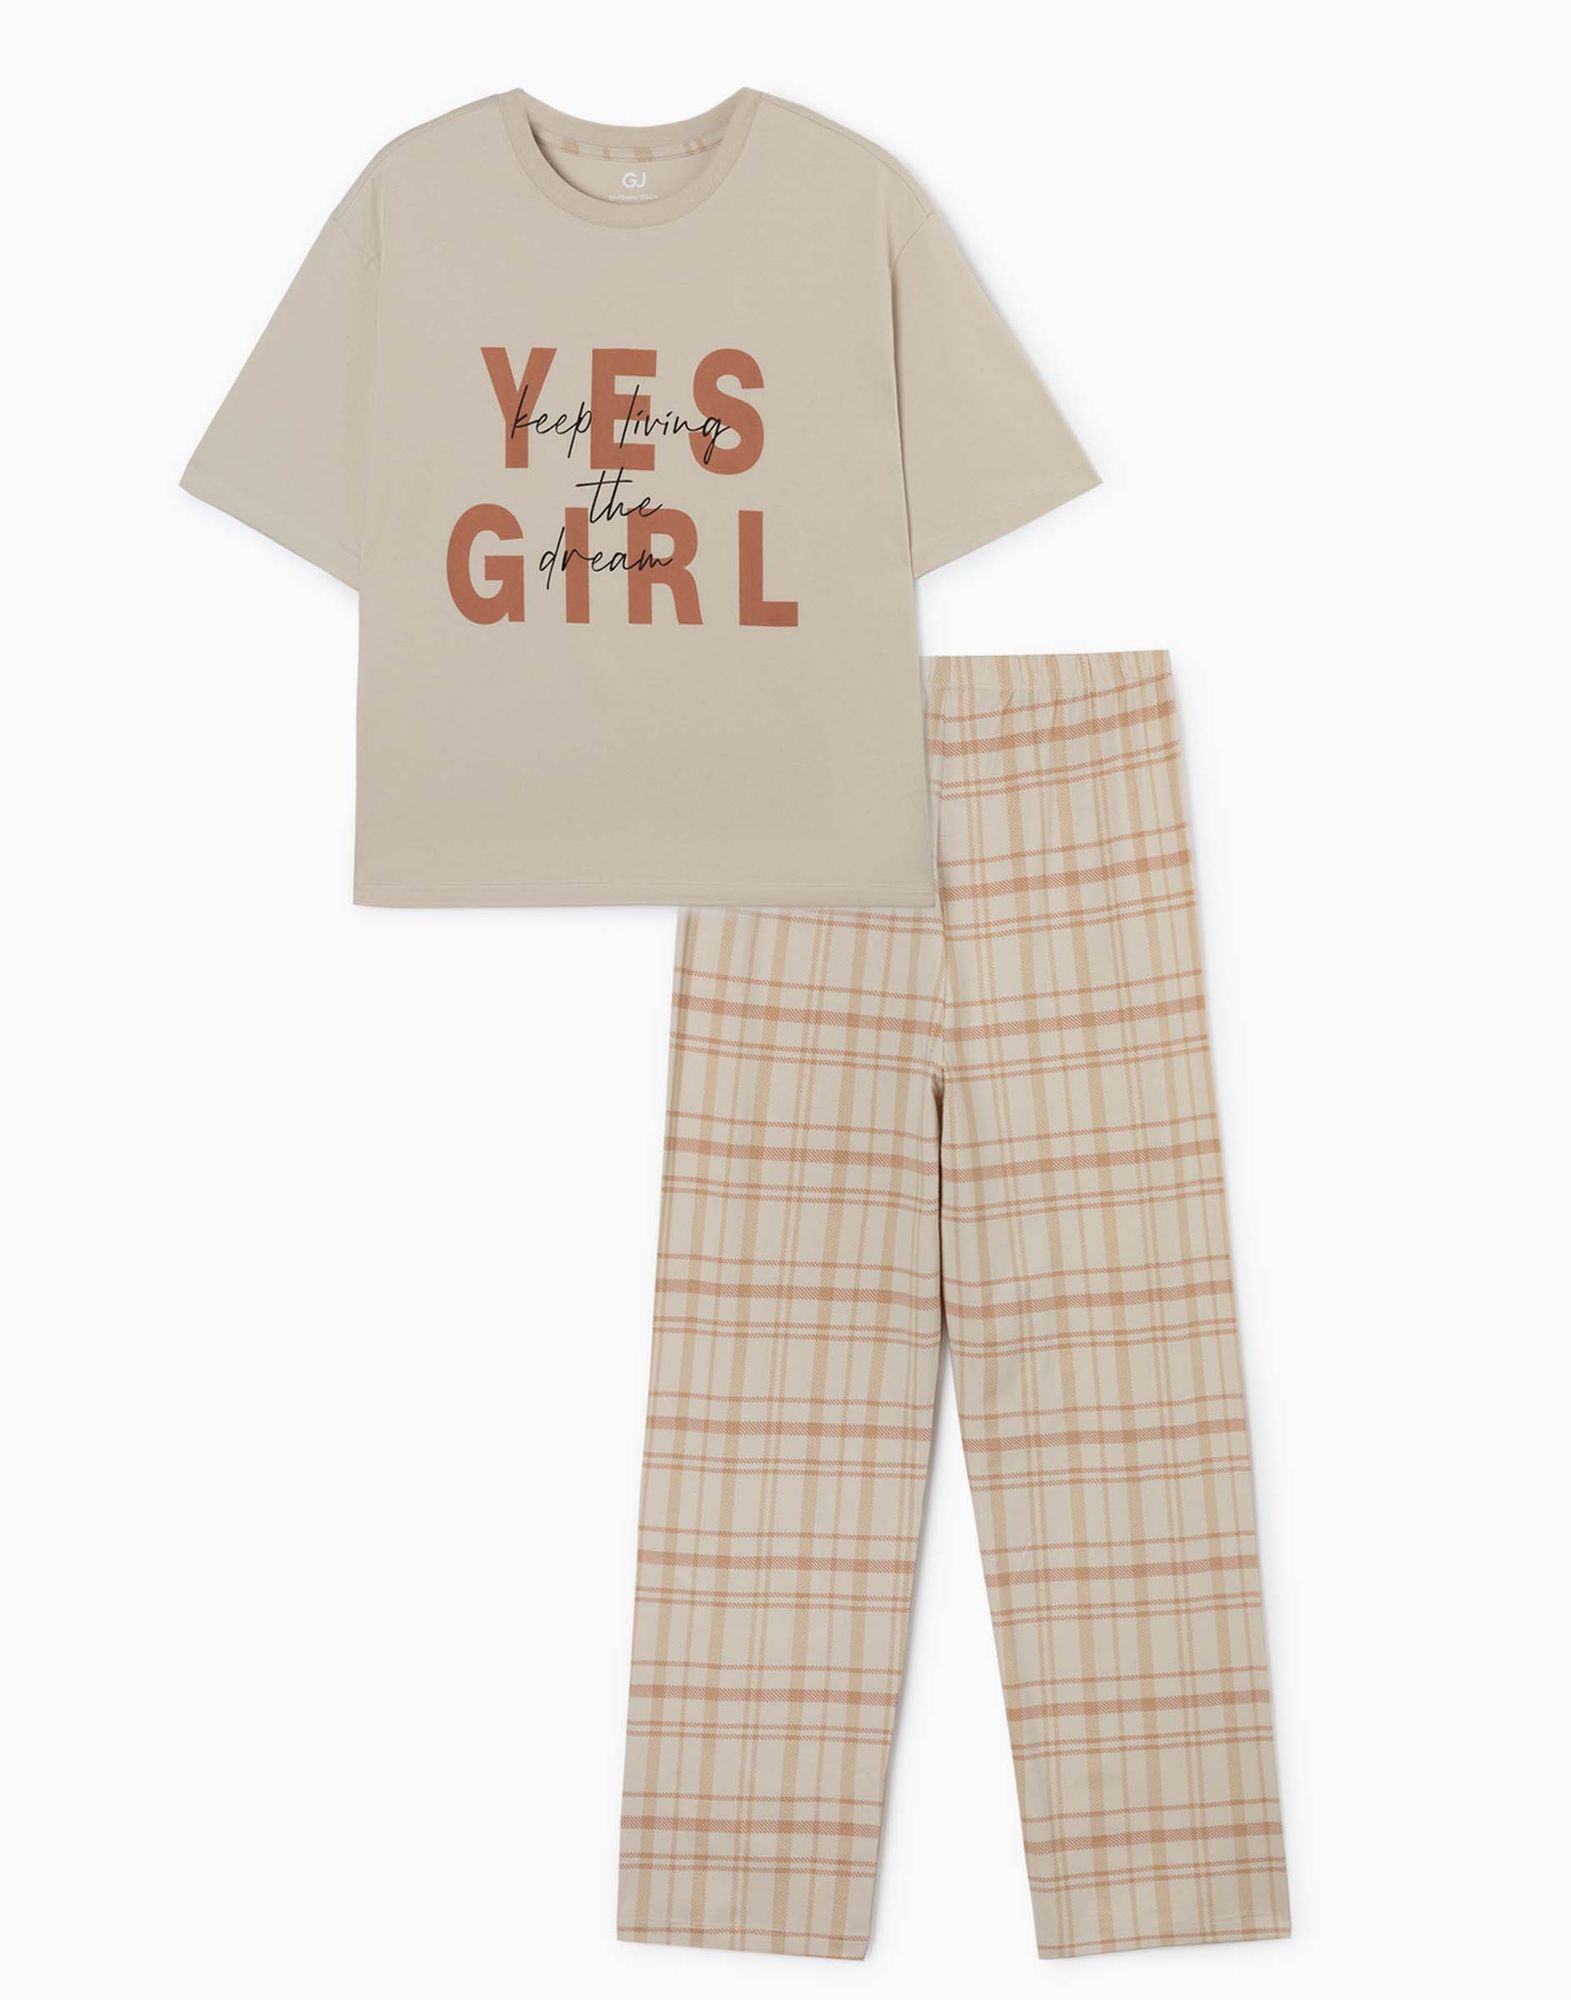 Бежевая пижама с надписями для девочки-0